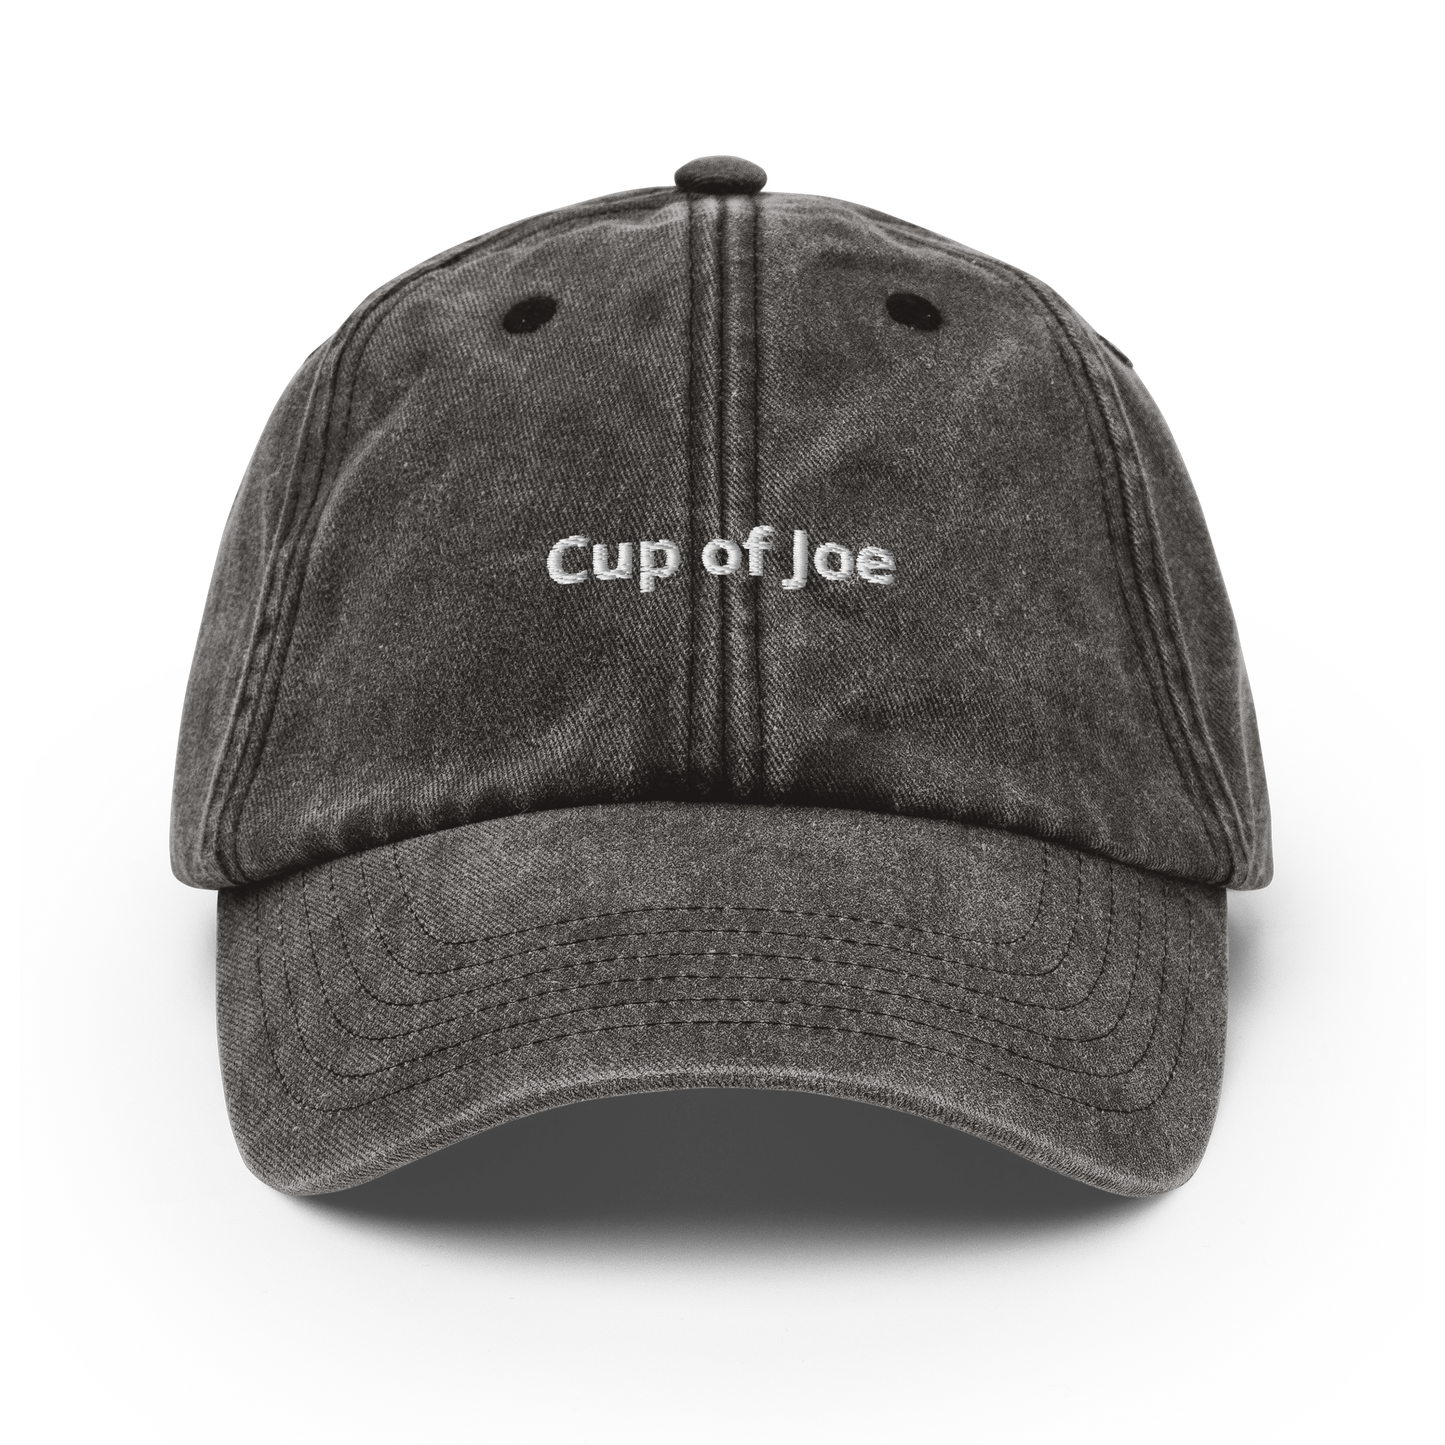 Cup of Joe - Vintage Hat